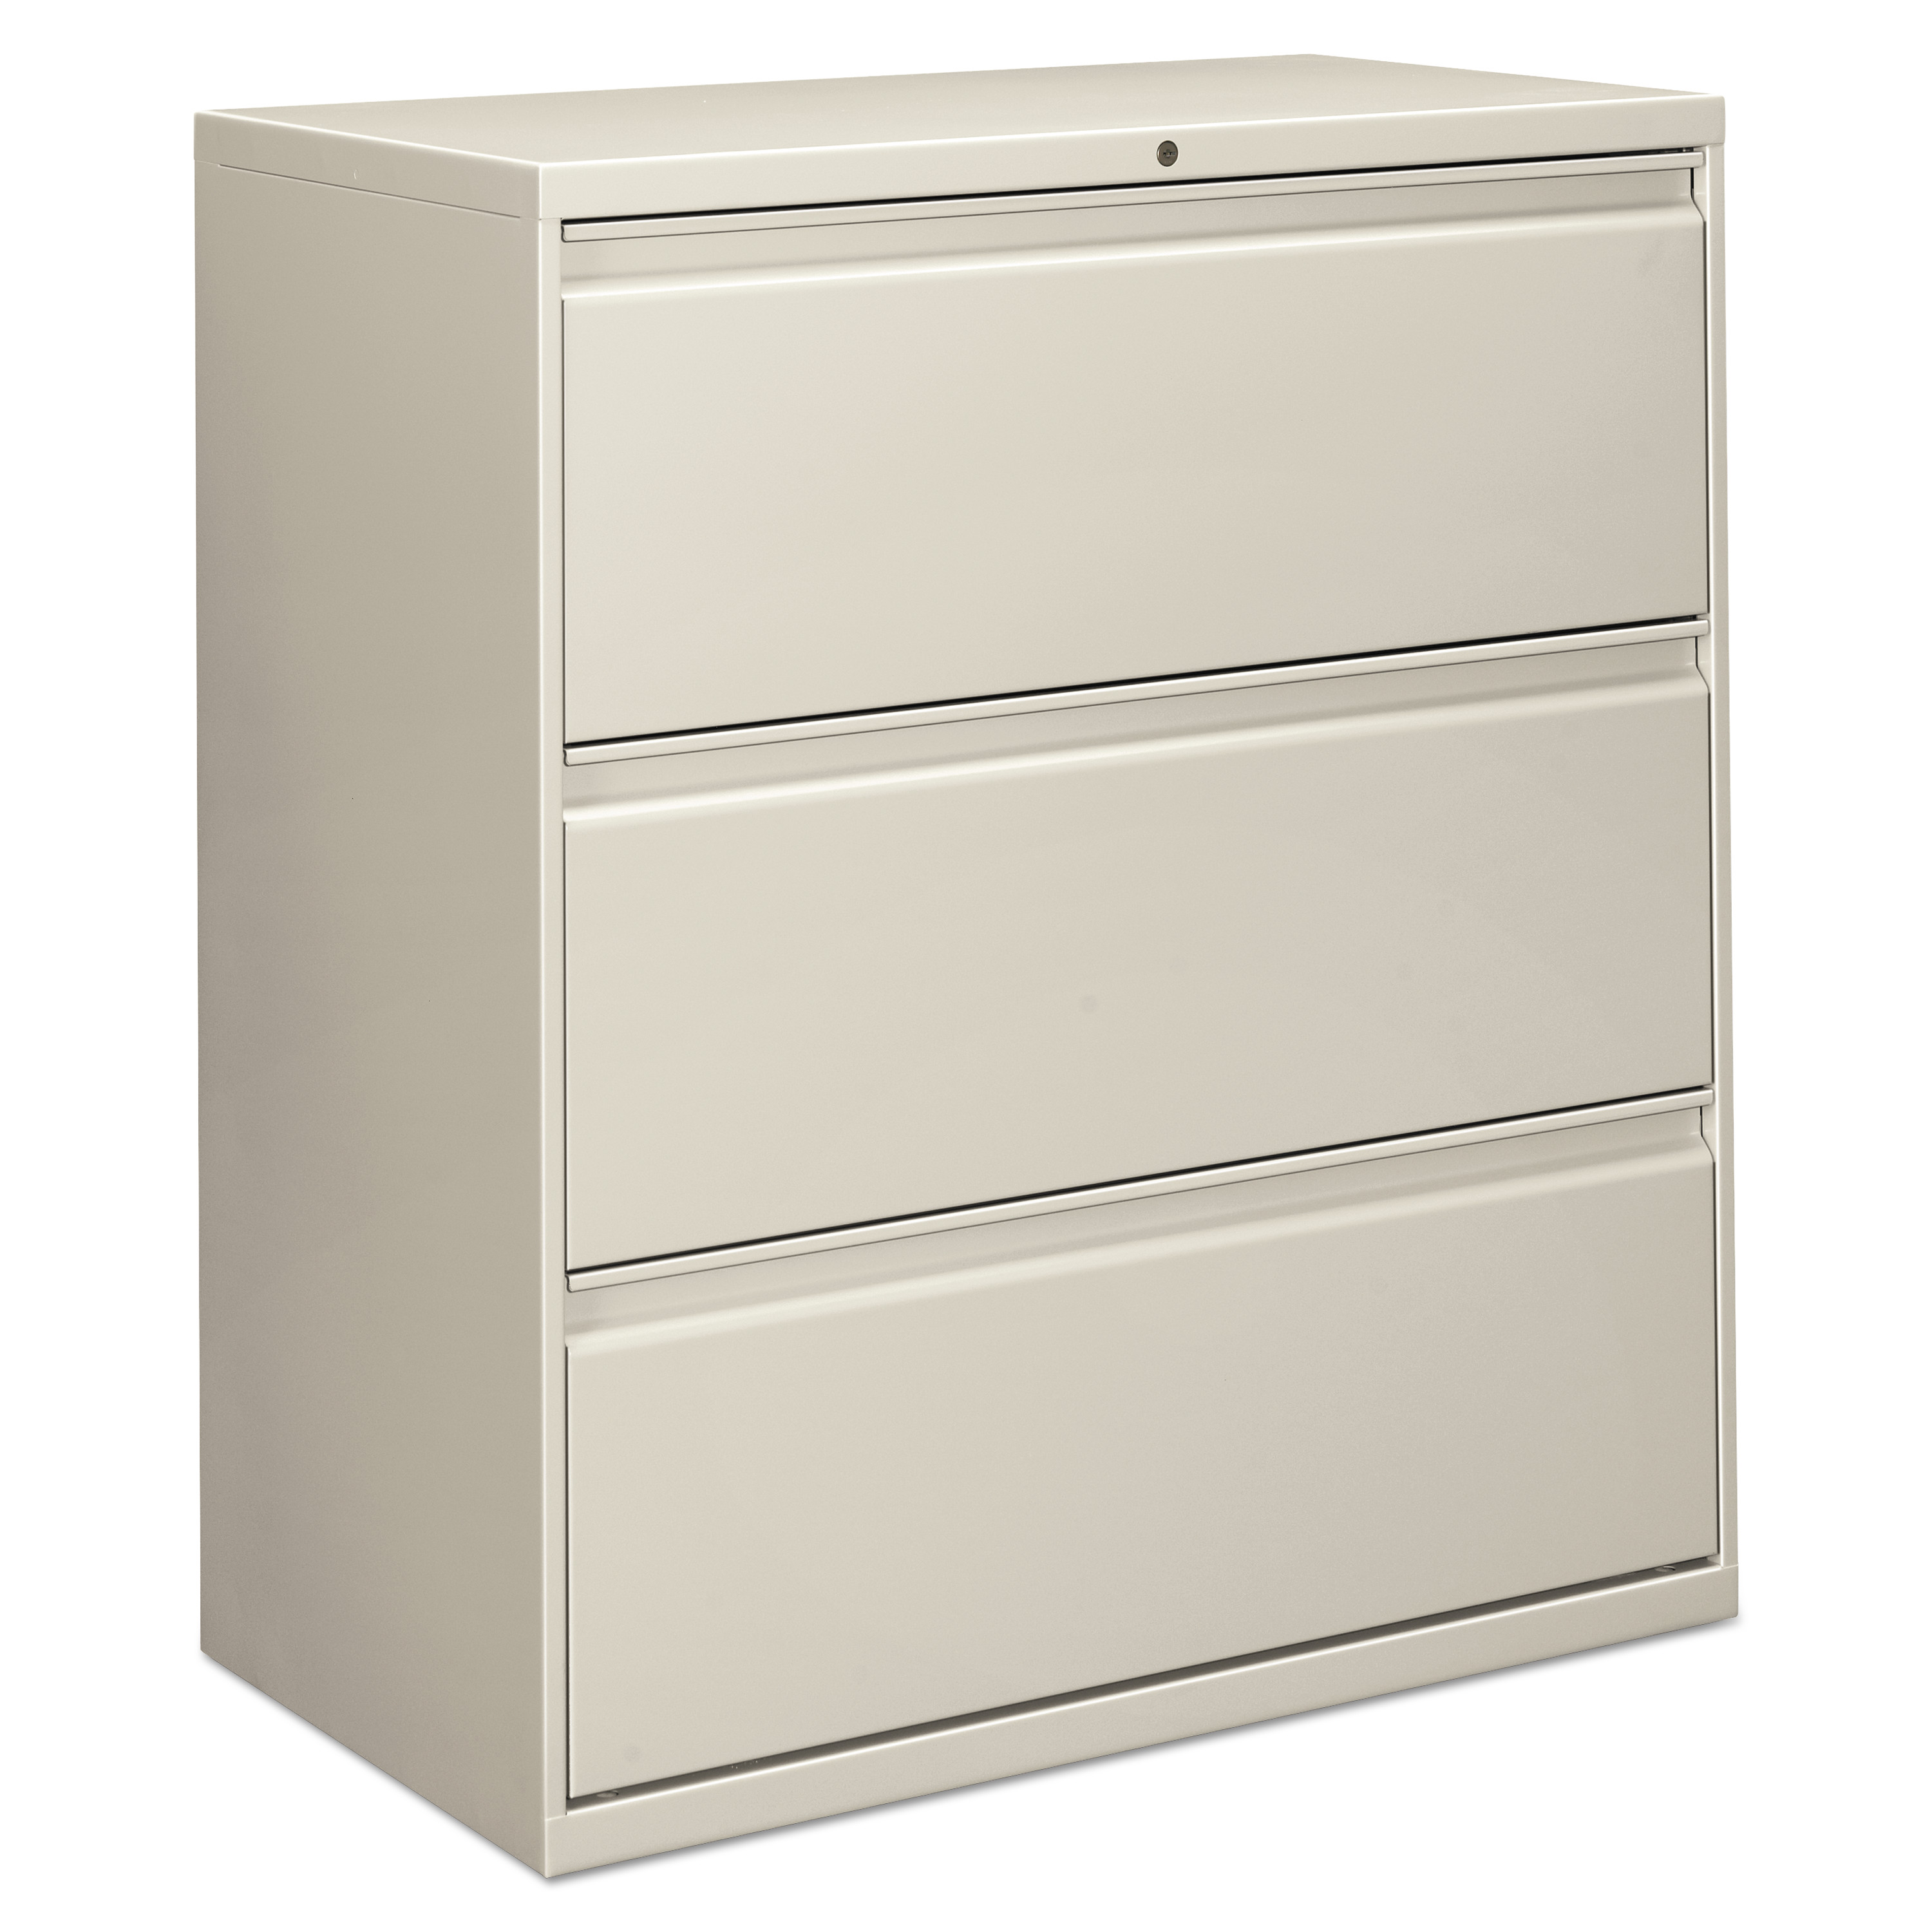  Alera ALELF3641LG Three-Drawer Lateral File Cabinet, 36w x 18d x 39.5h, Light Gray (ALELF3641LG) 